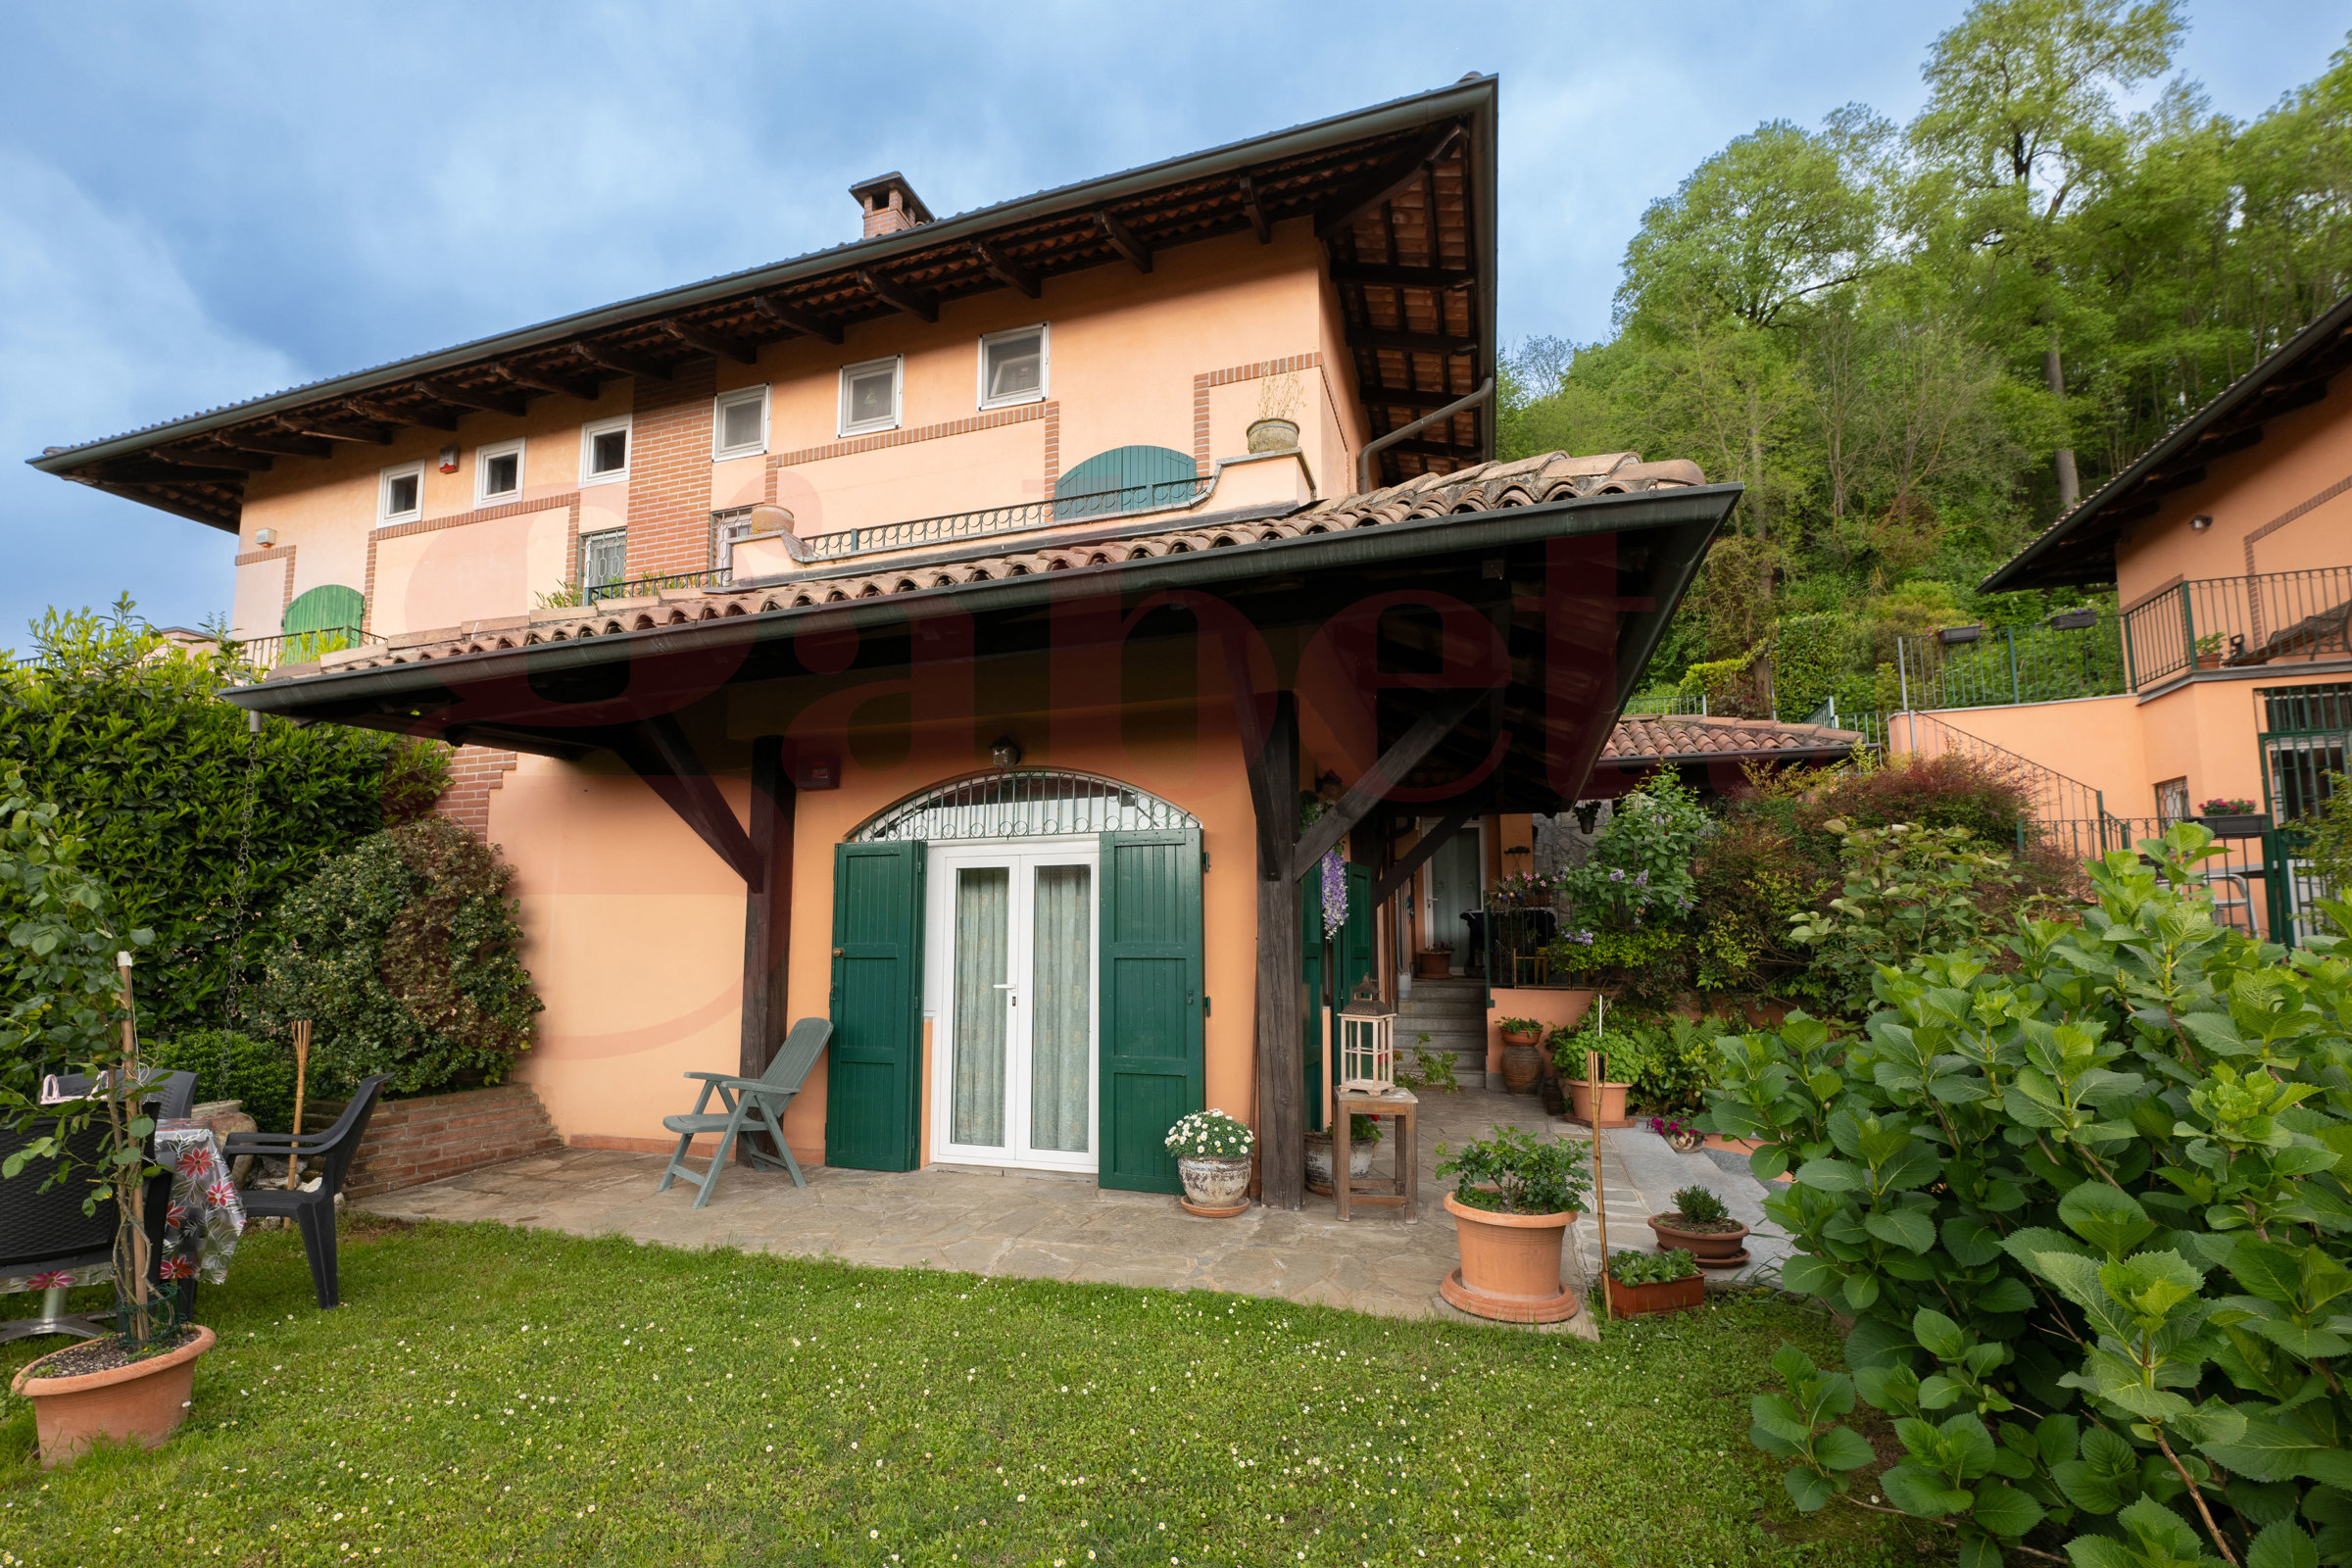 Villa Bifamiliare con giardino a Castiglione Torinese